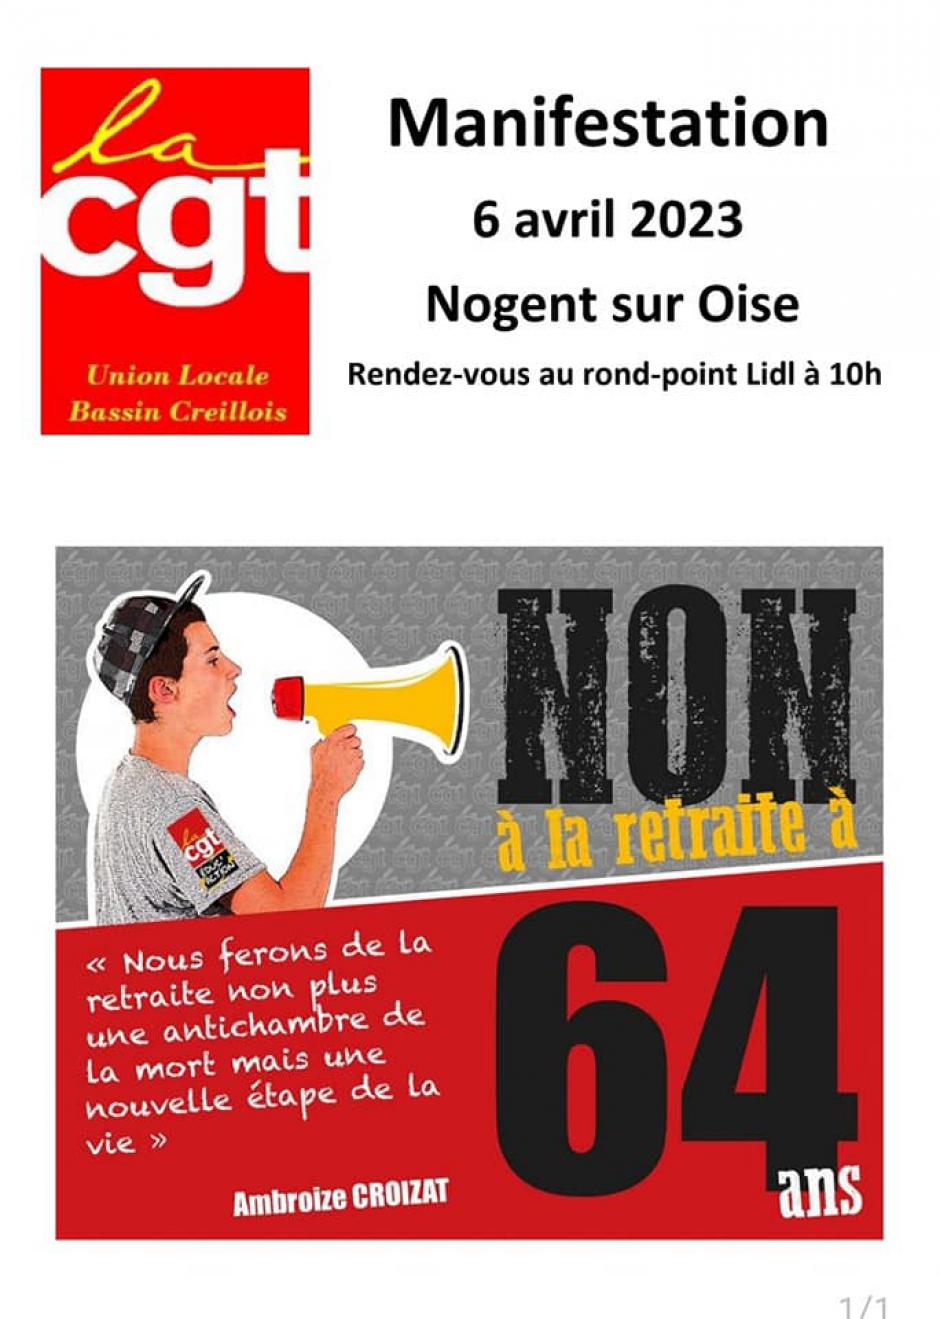 Flyer « Non à la retraite à 64 ans » - UL CGT Bassin creillois, 6 avril 2023